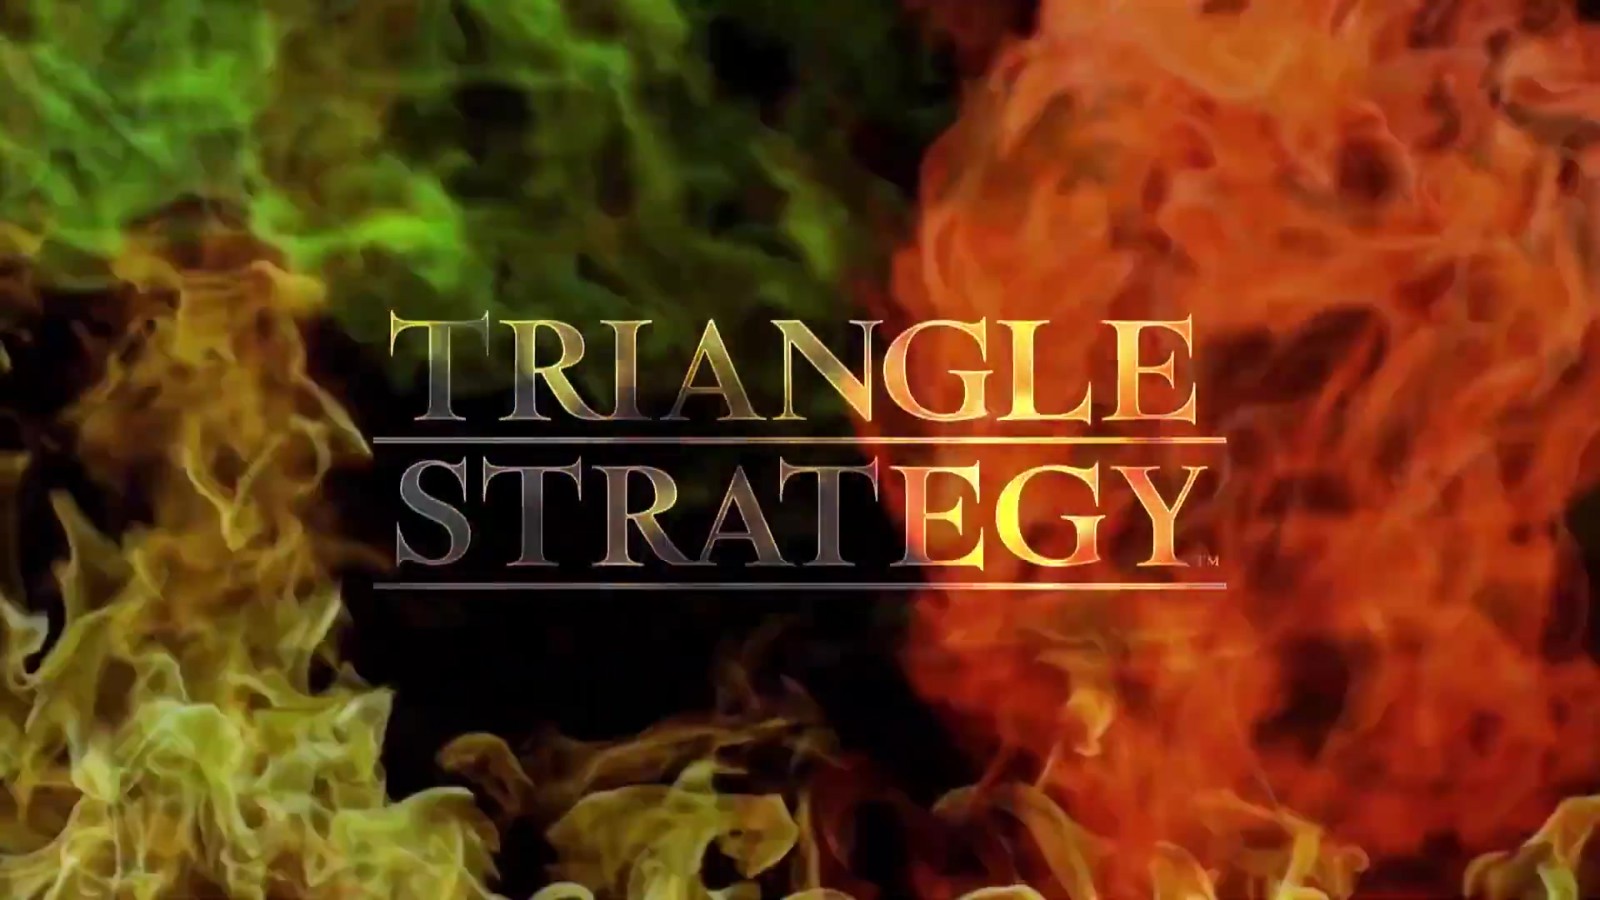 战略RPG《三角战略》中文最终宣传片分享